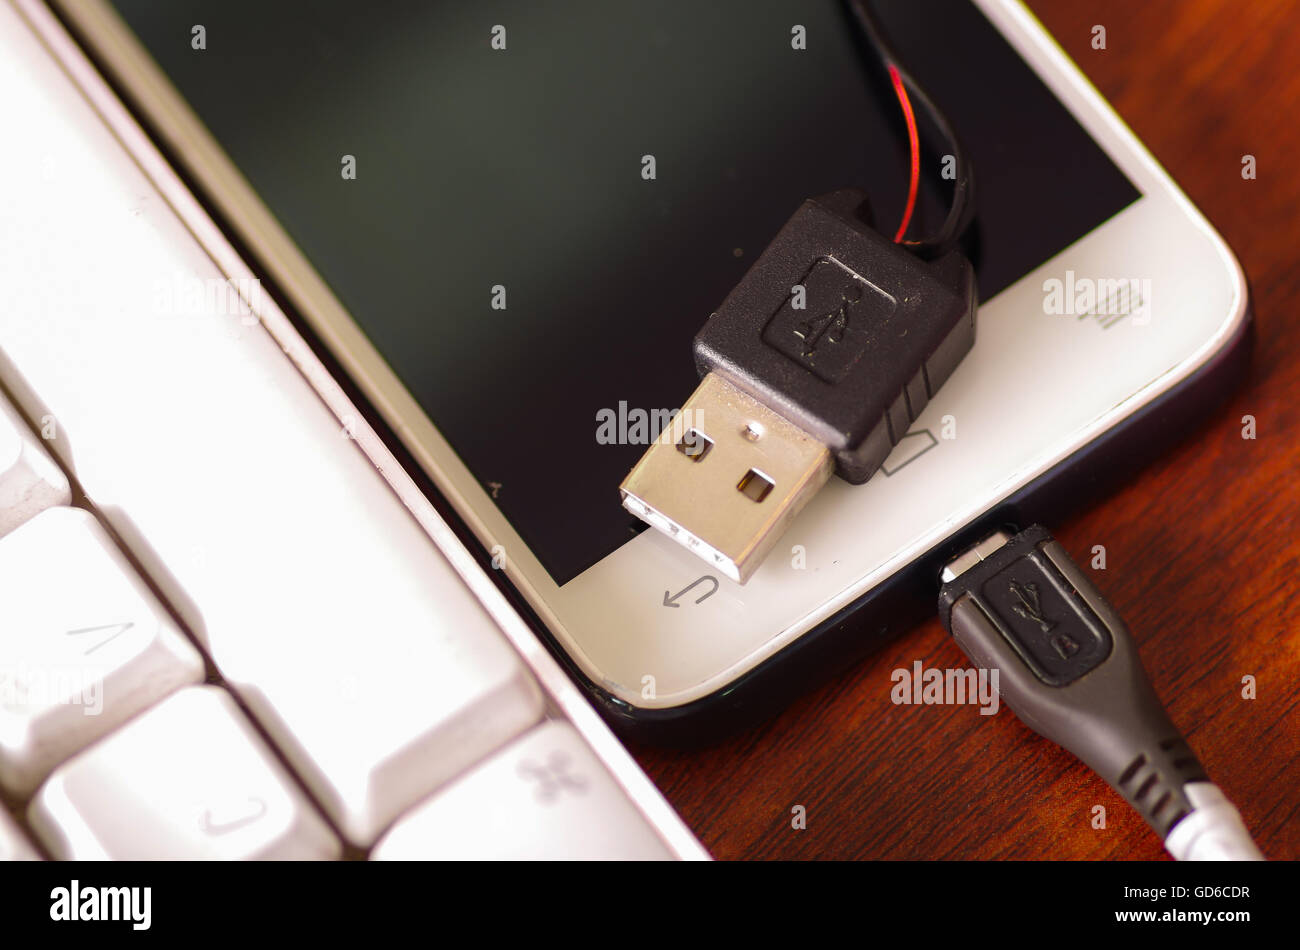 USB-mobiles Ladegerät Kabel angeschlossen in Smartphone liegen auf  Holzoberfläche neben Computer-Tastatur gebrochen, Teil des Drahtes durch  Riss im Kunststoff-Schutz ausgesetzt Stockfotografie - Alamy